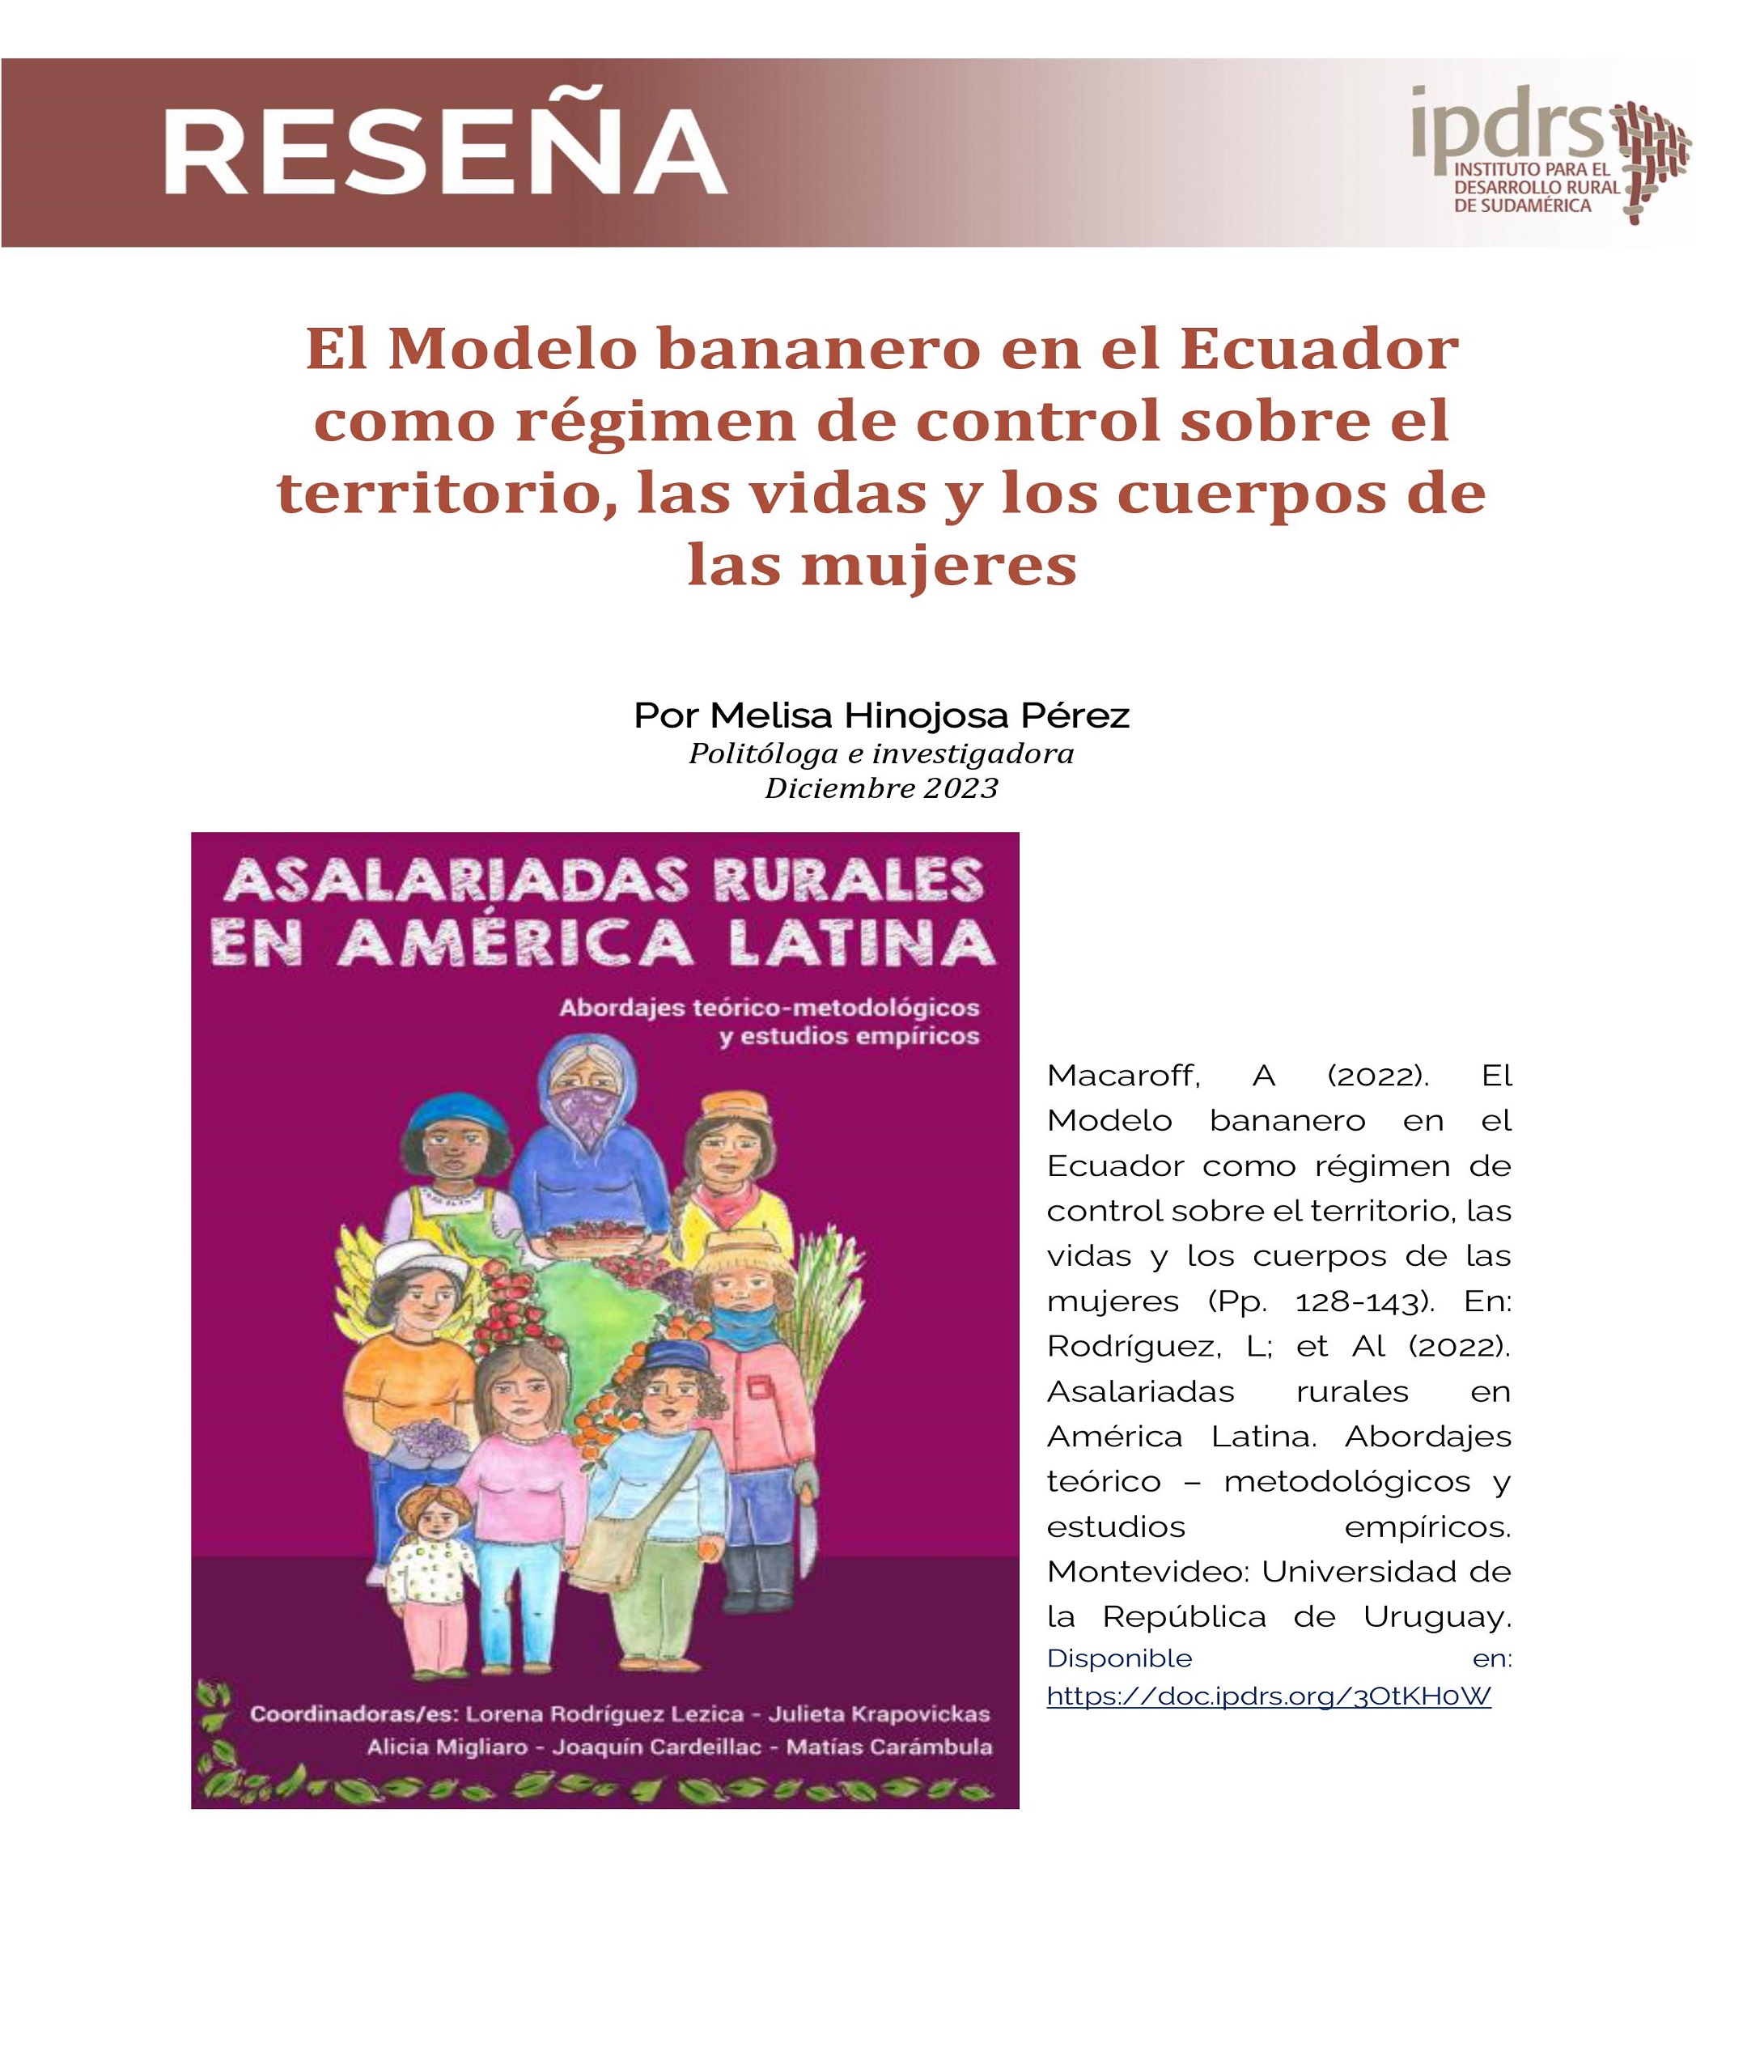 Reseña: El Modelo bananero en el Ecuador como régimen de control sobre el territorio, las vidas y los cuerpos de las mujeres